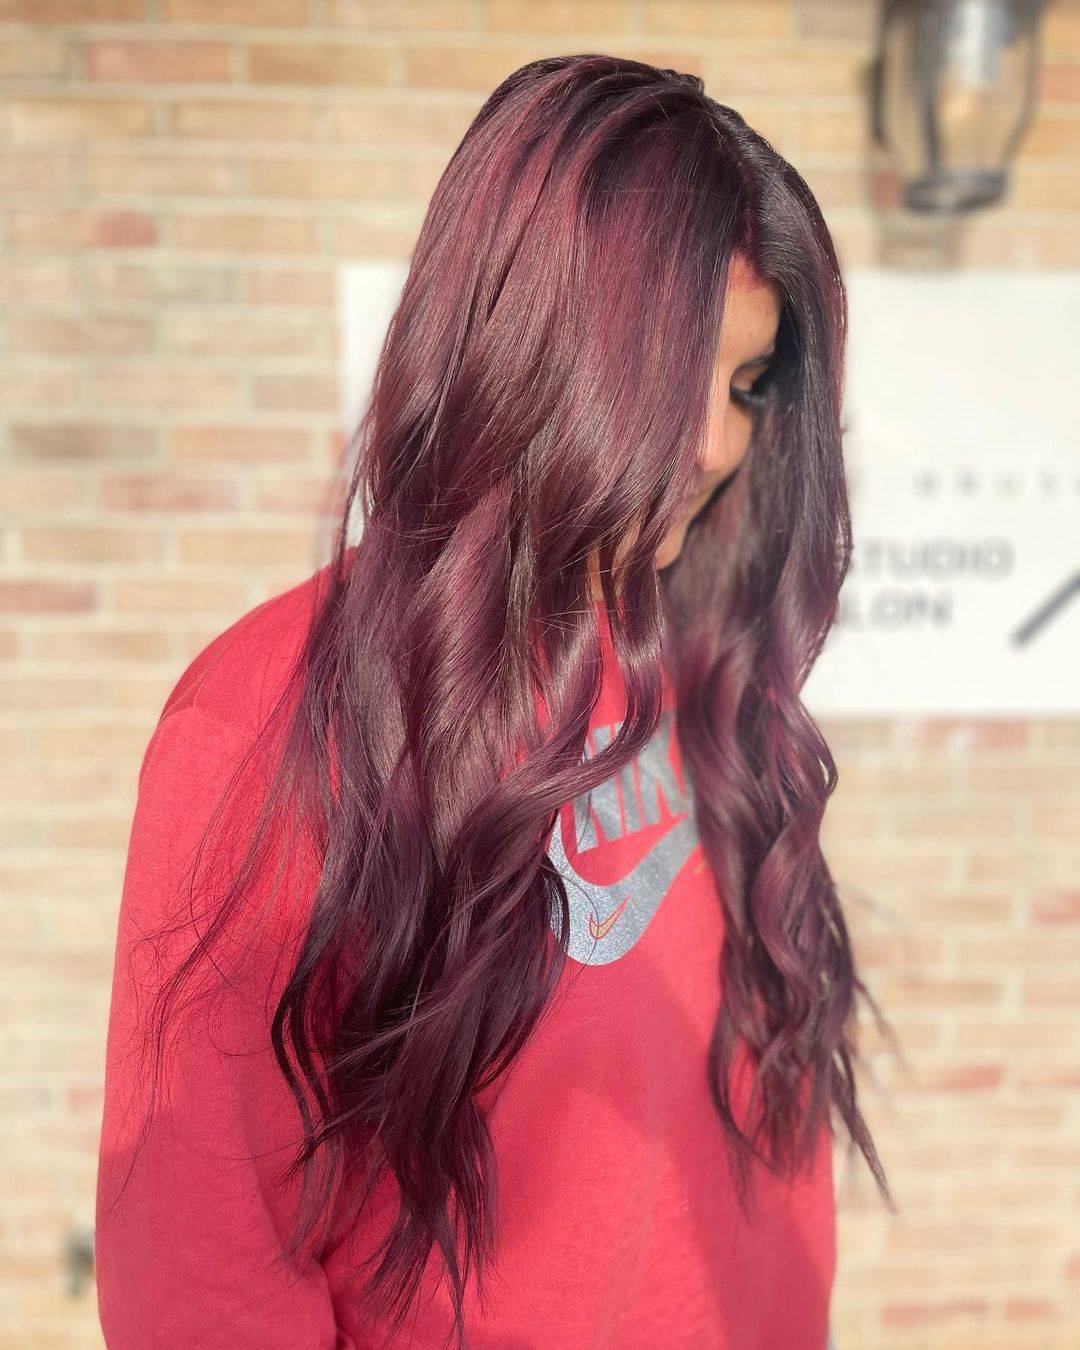 Burgundy hair color 238 burgundy hair color | burgundy hair color for women | burgundy hair color highlights Burgundy Hair Color